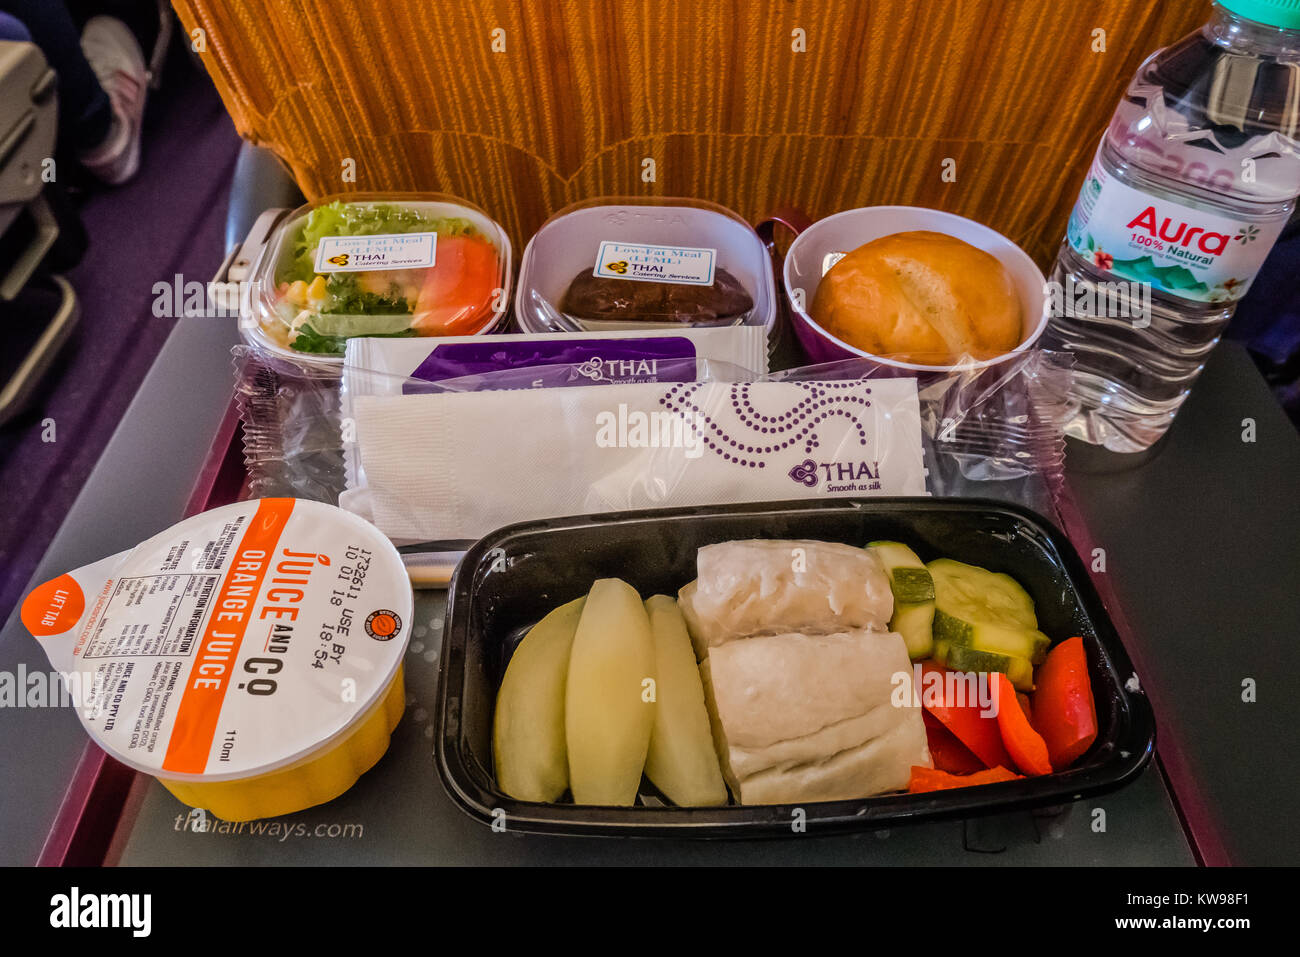 A basso contenuto di grassi heathy pasto della compagnia aerea Foto Stock